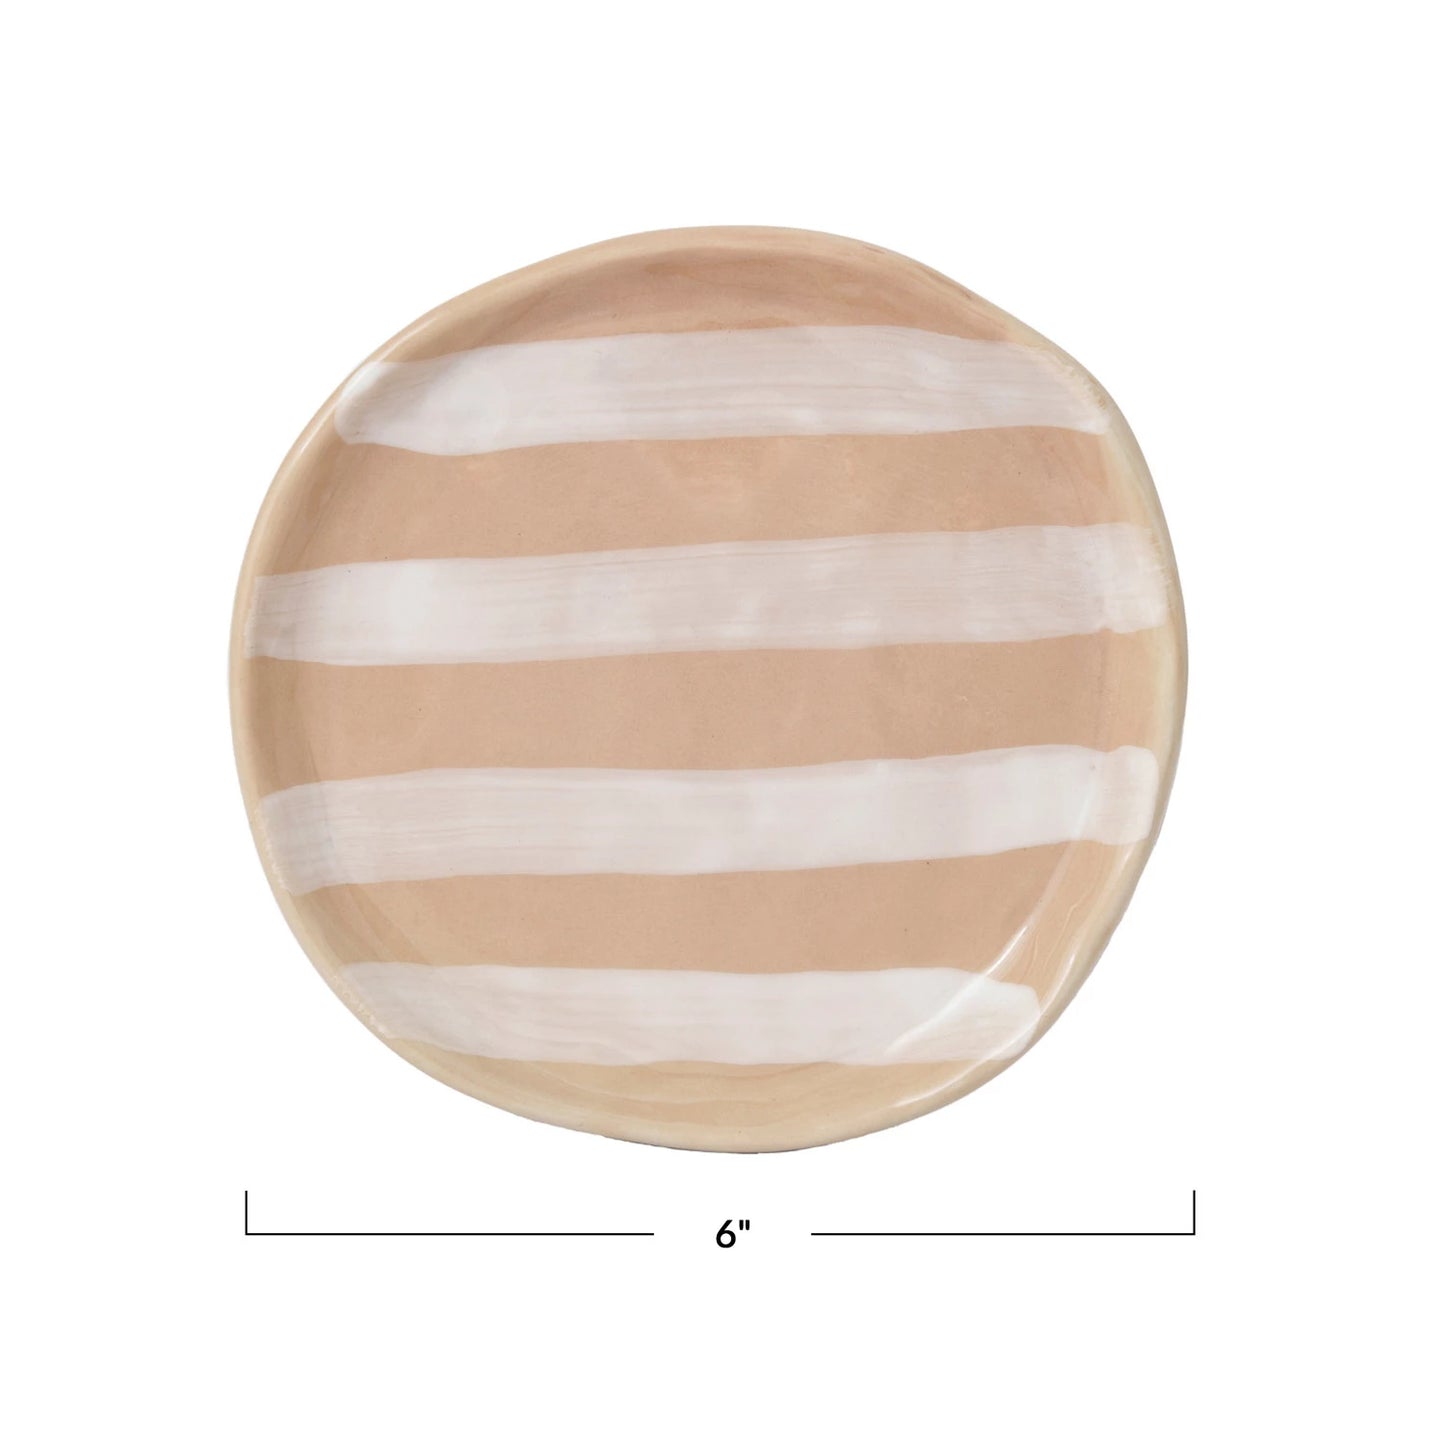 5" stripe small plate - cream and white